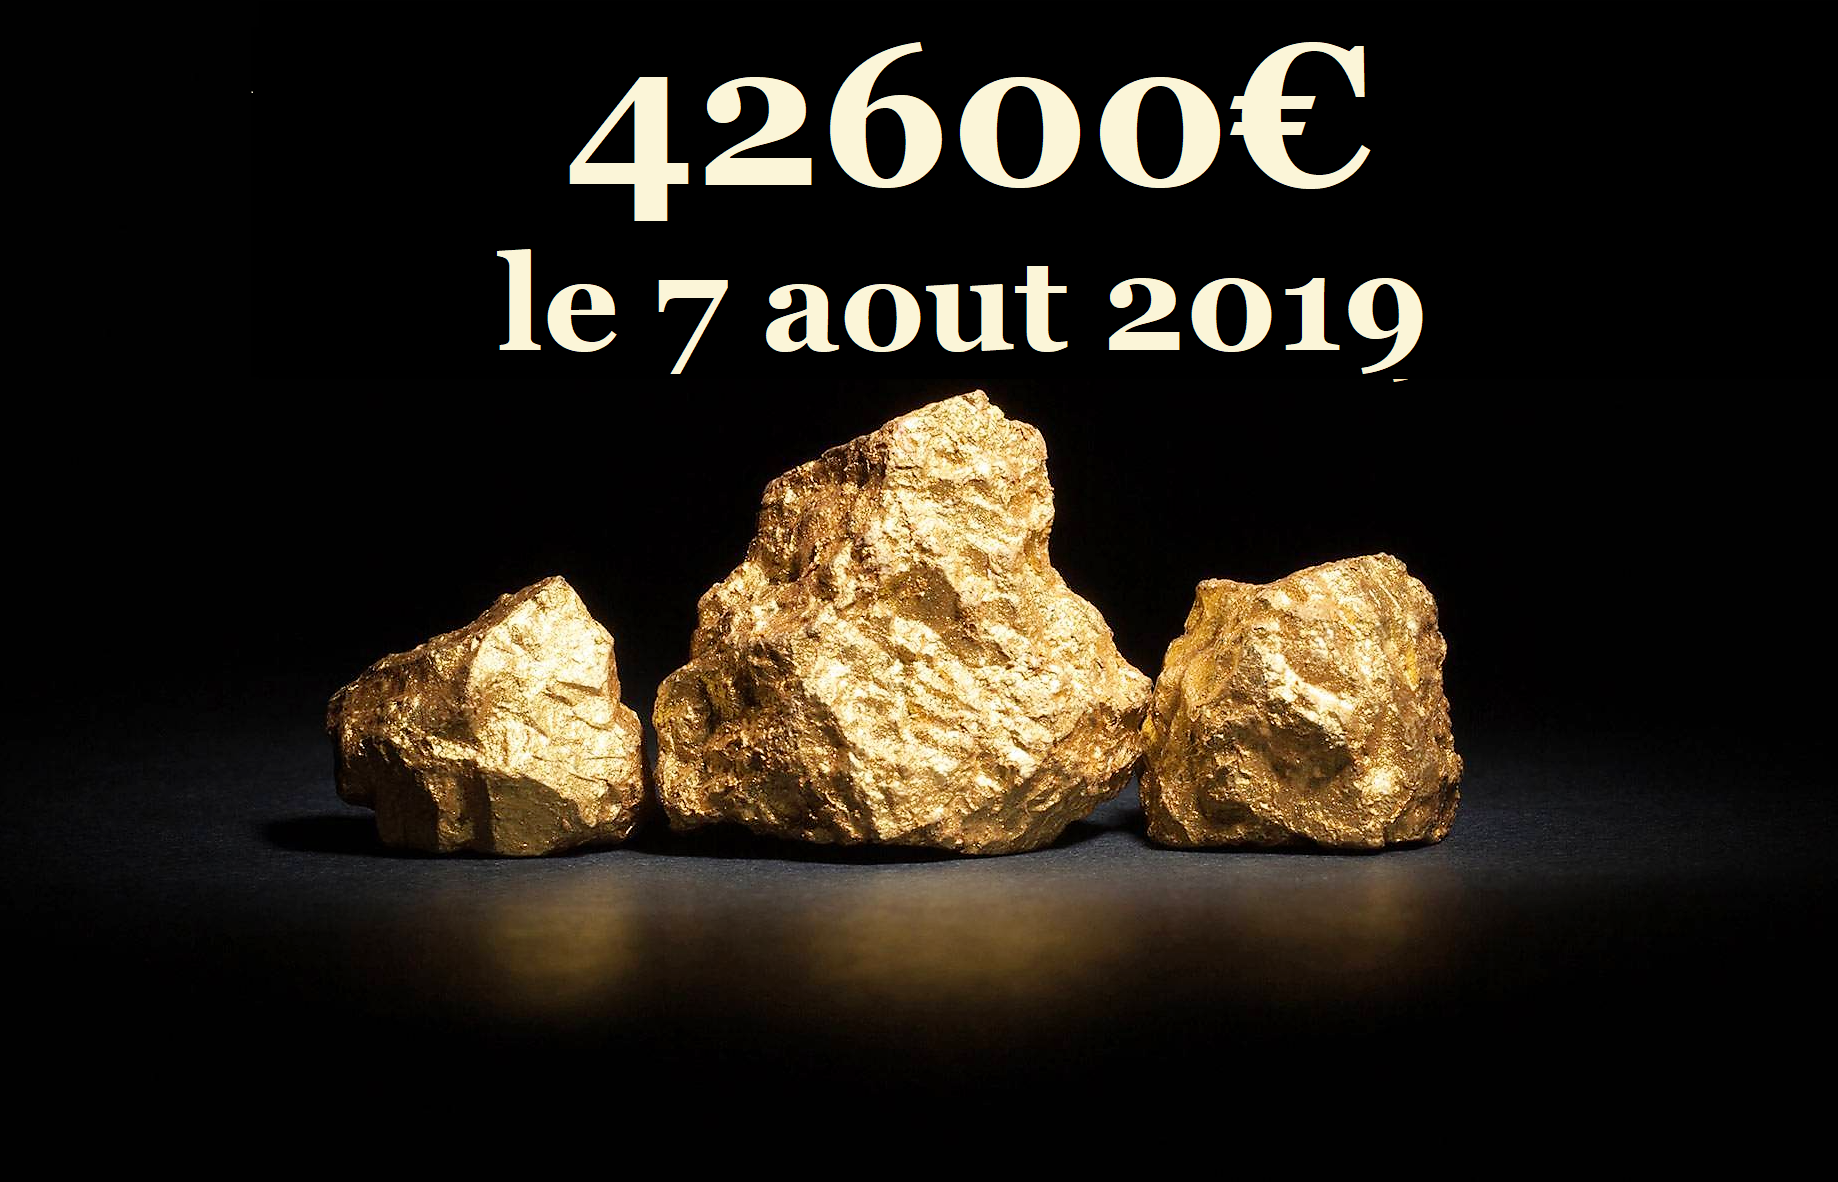 LINGOT D'OR à 42600€ : La guerre des monnaies a commencé par les comptoirs d achat or Rouen Amiens